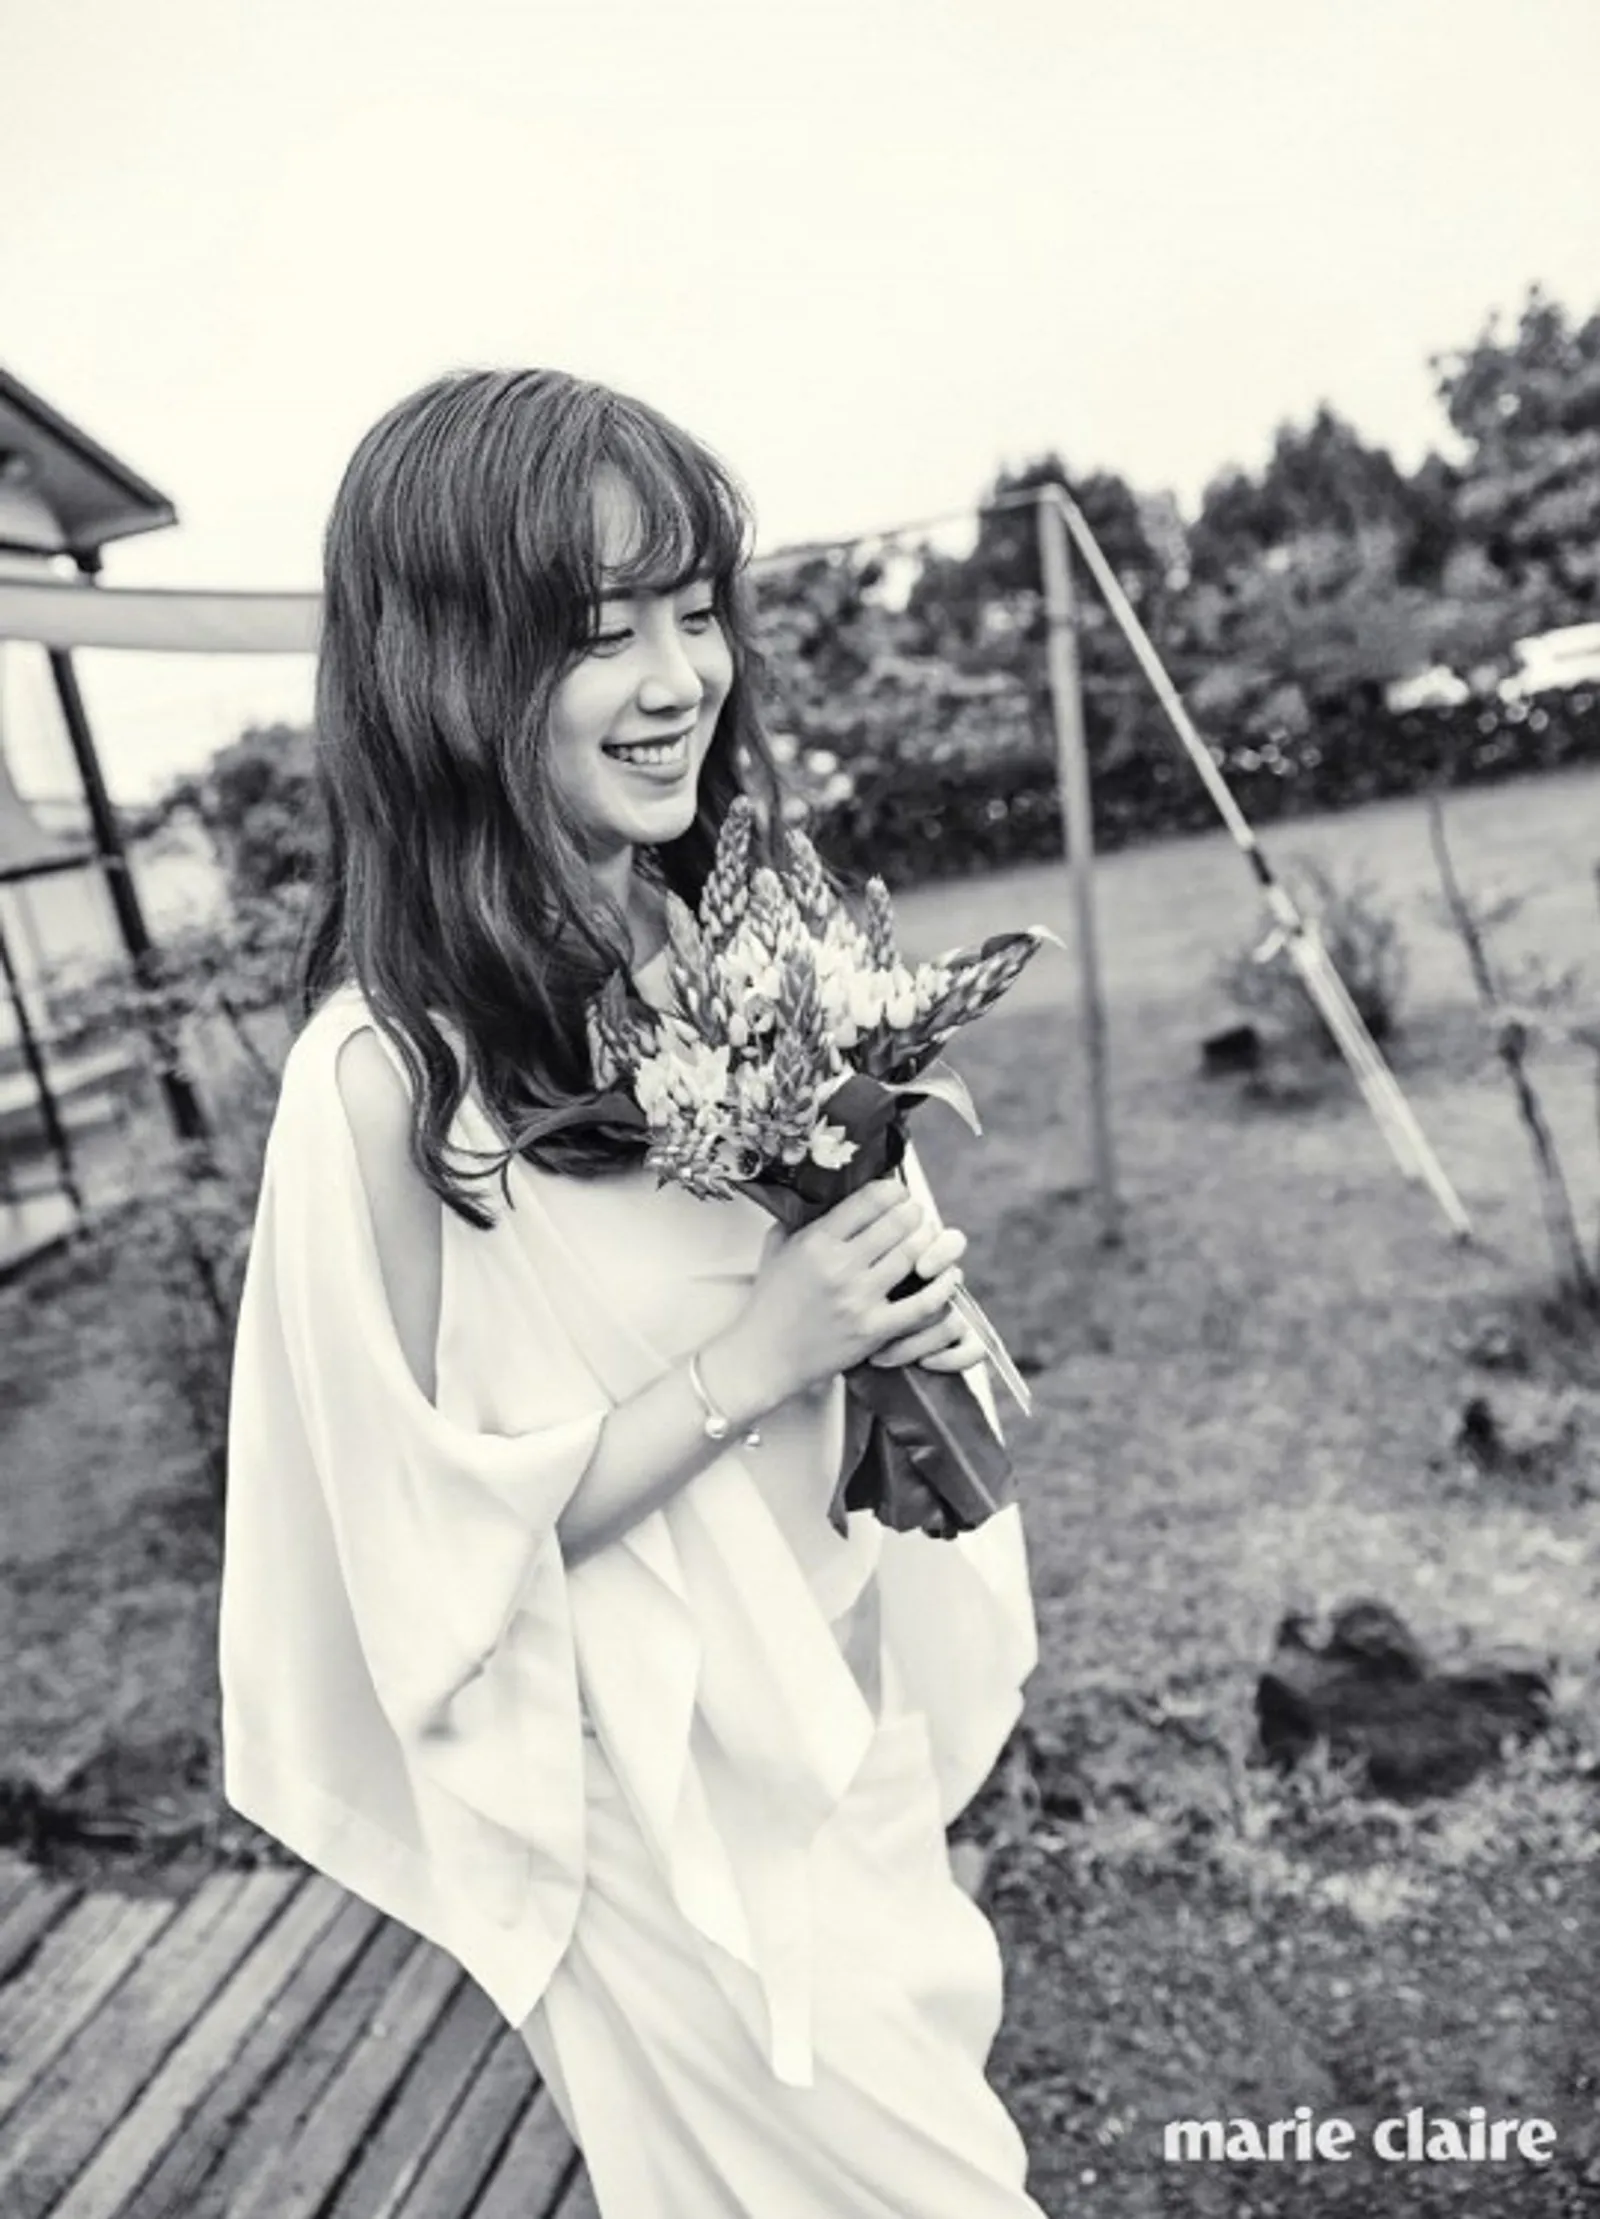 16 Gaya Artis Korea Pakai Gaun Mewah di Hari Pernikahan